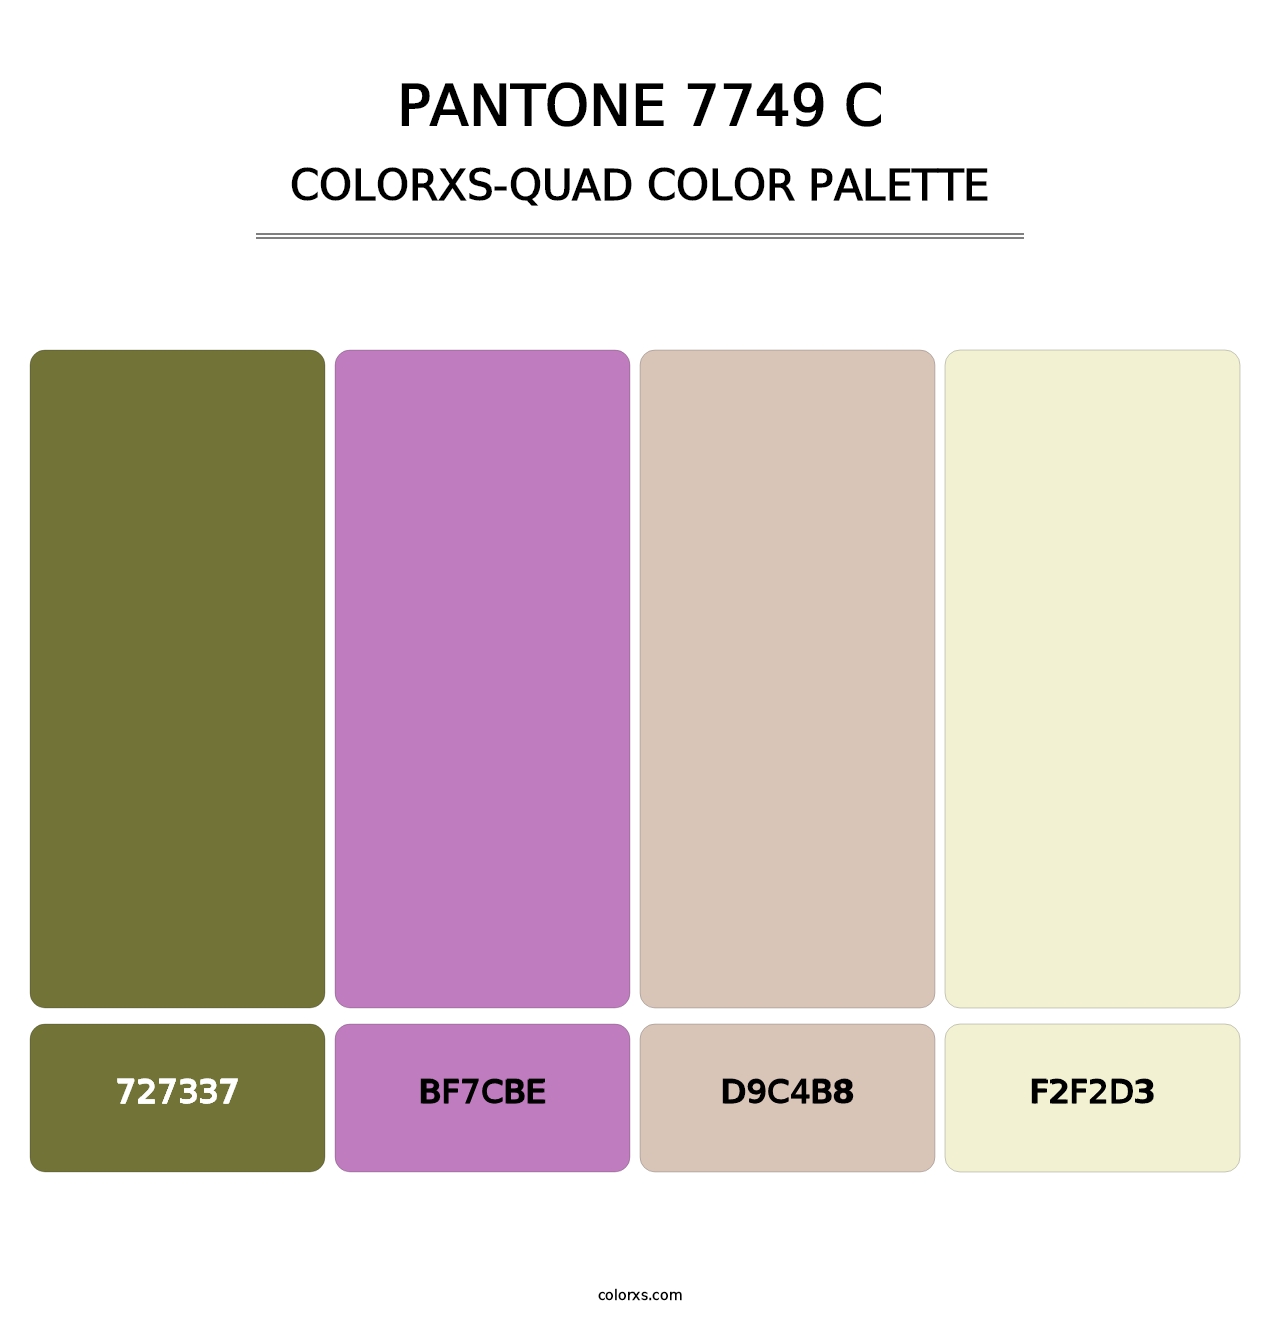 PANTONE 7749 C - Colorxs Quad Palette